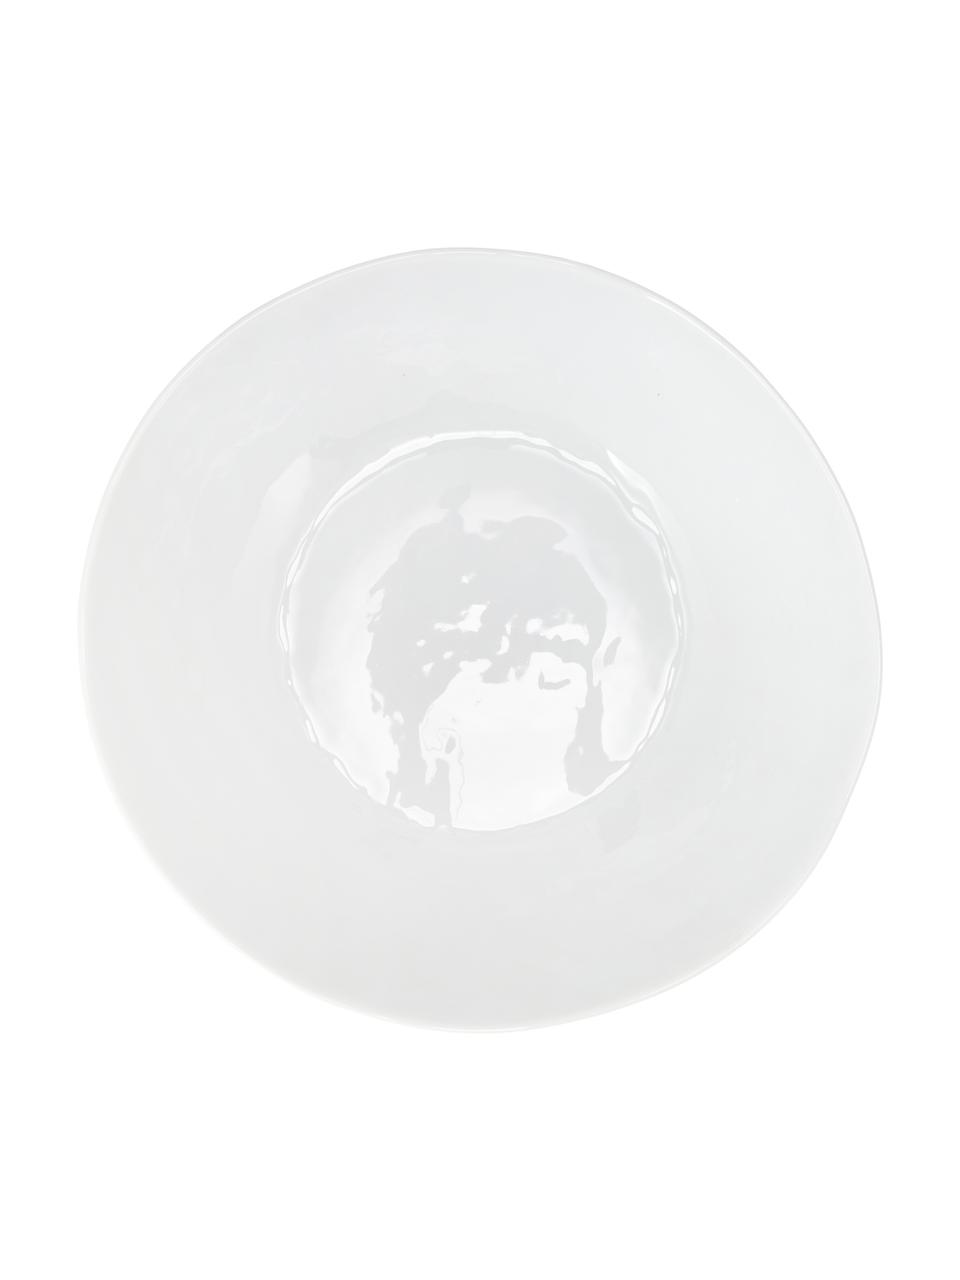 Ovale Schüssel Porcelino mit unebener Oberfläche, Porzellan, gewollt ungleichmässig, Weiss, B 33 x T 37 cm